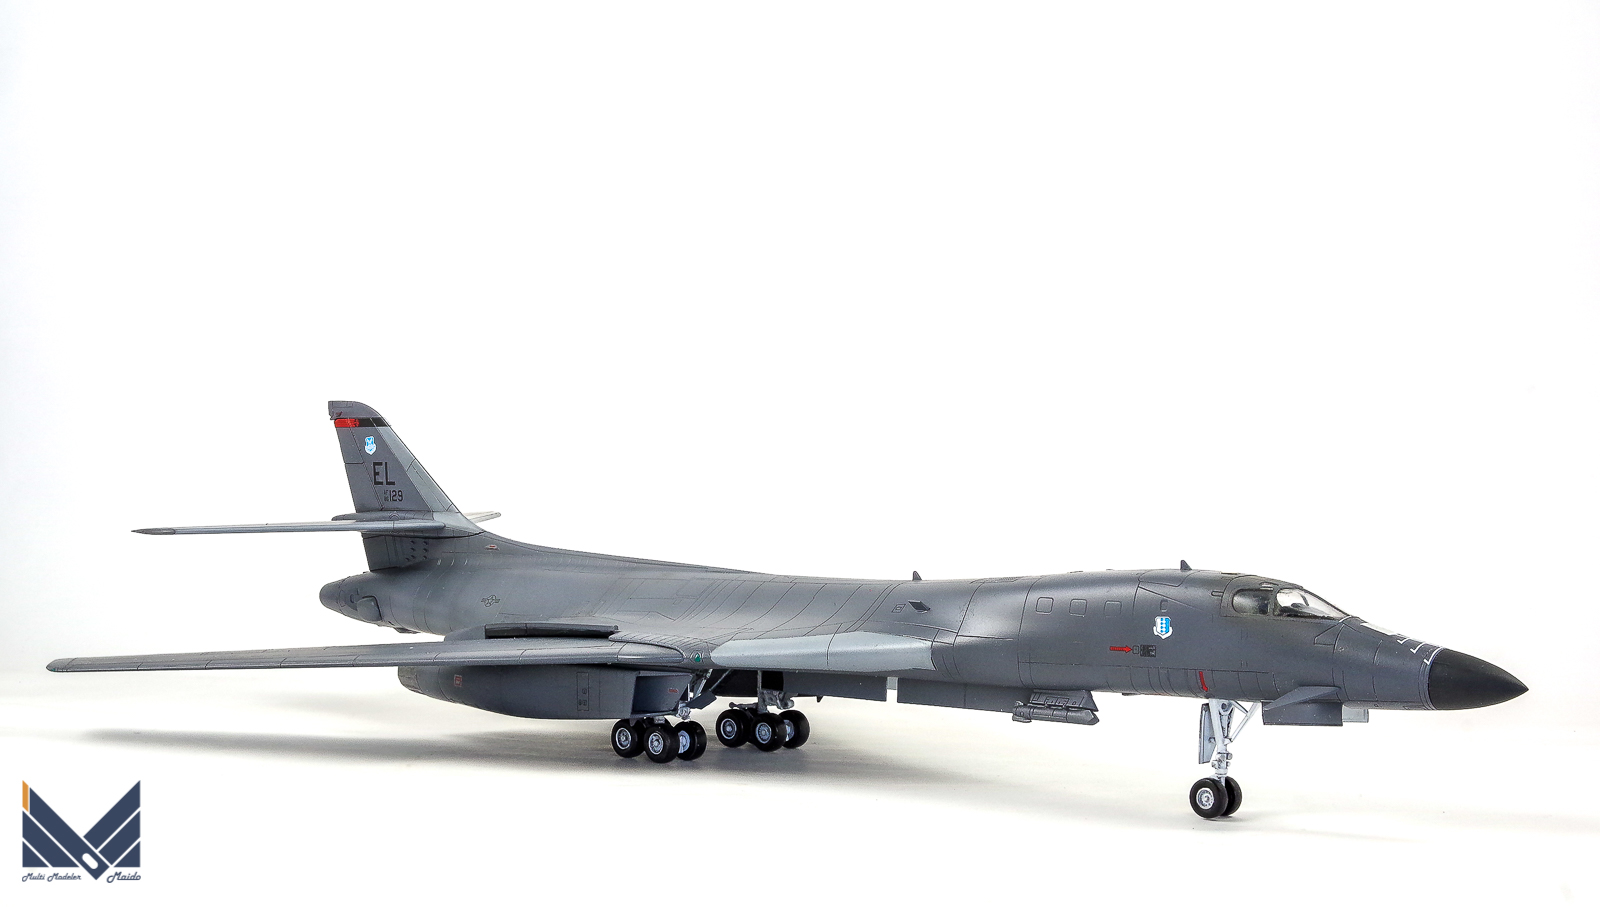 アカデミー 1/144 B-1B ランサー 完成品 academy 飛行機模型完成品